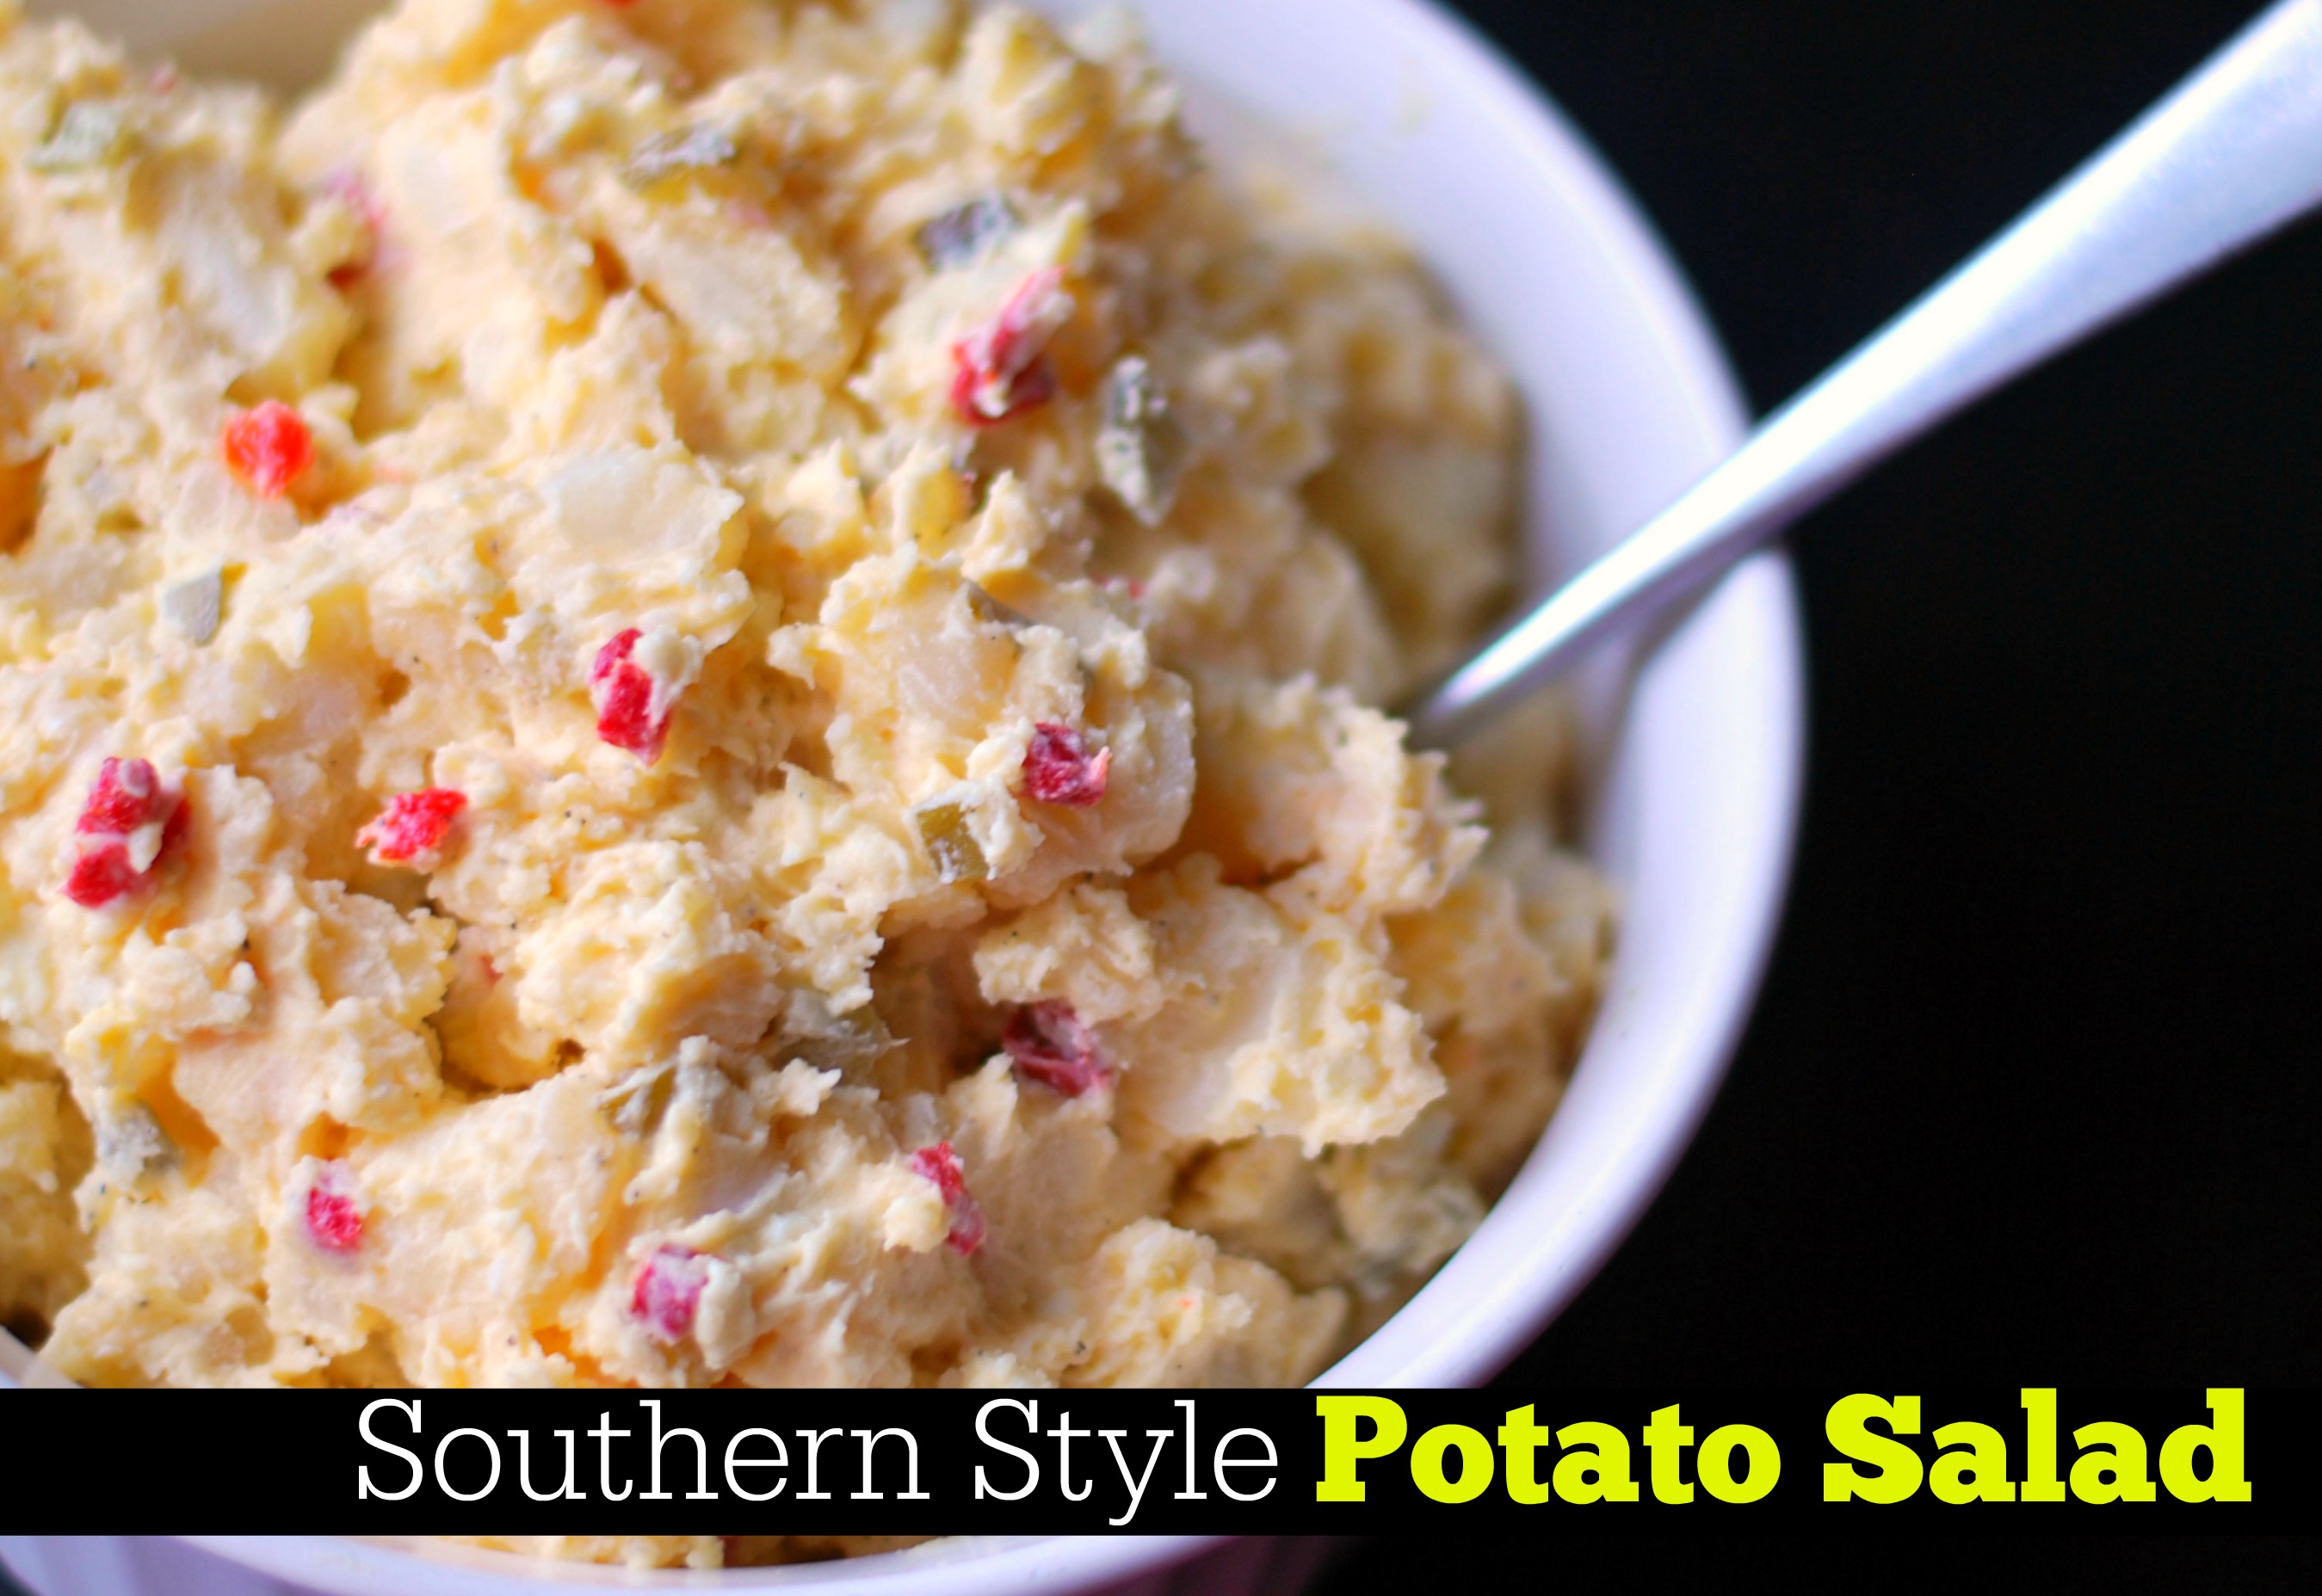 Mama’s Southern Style Potato Salad